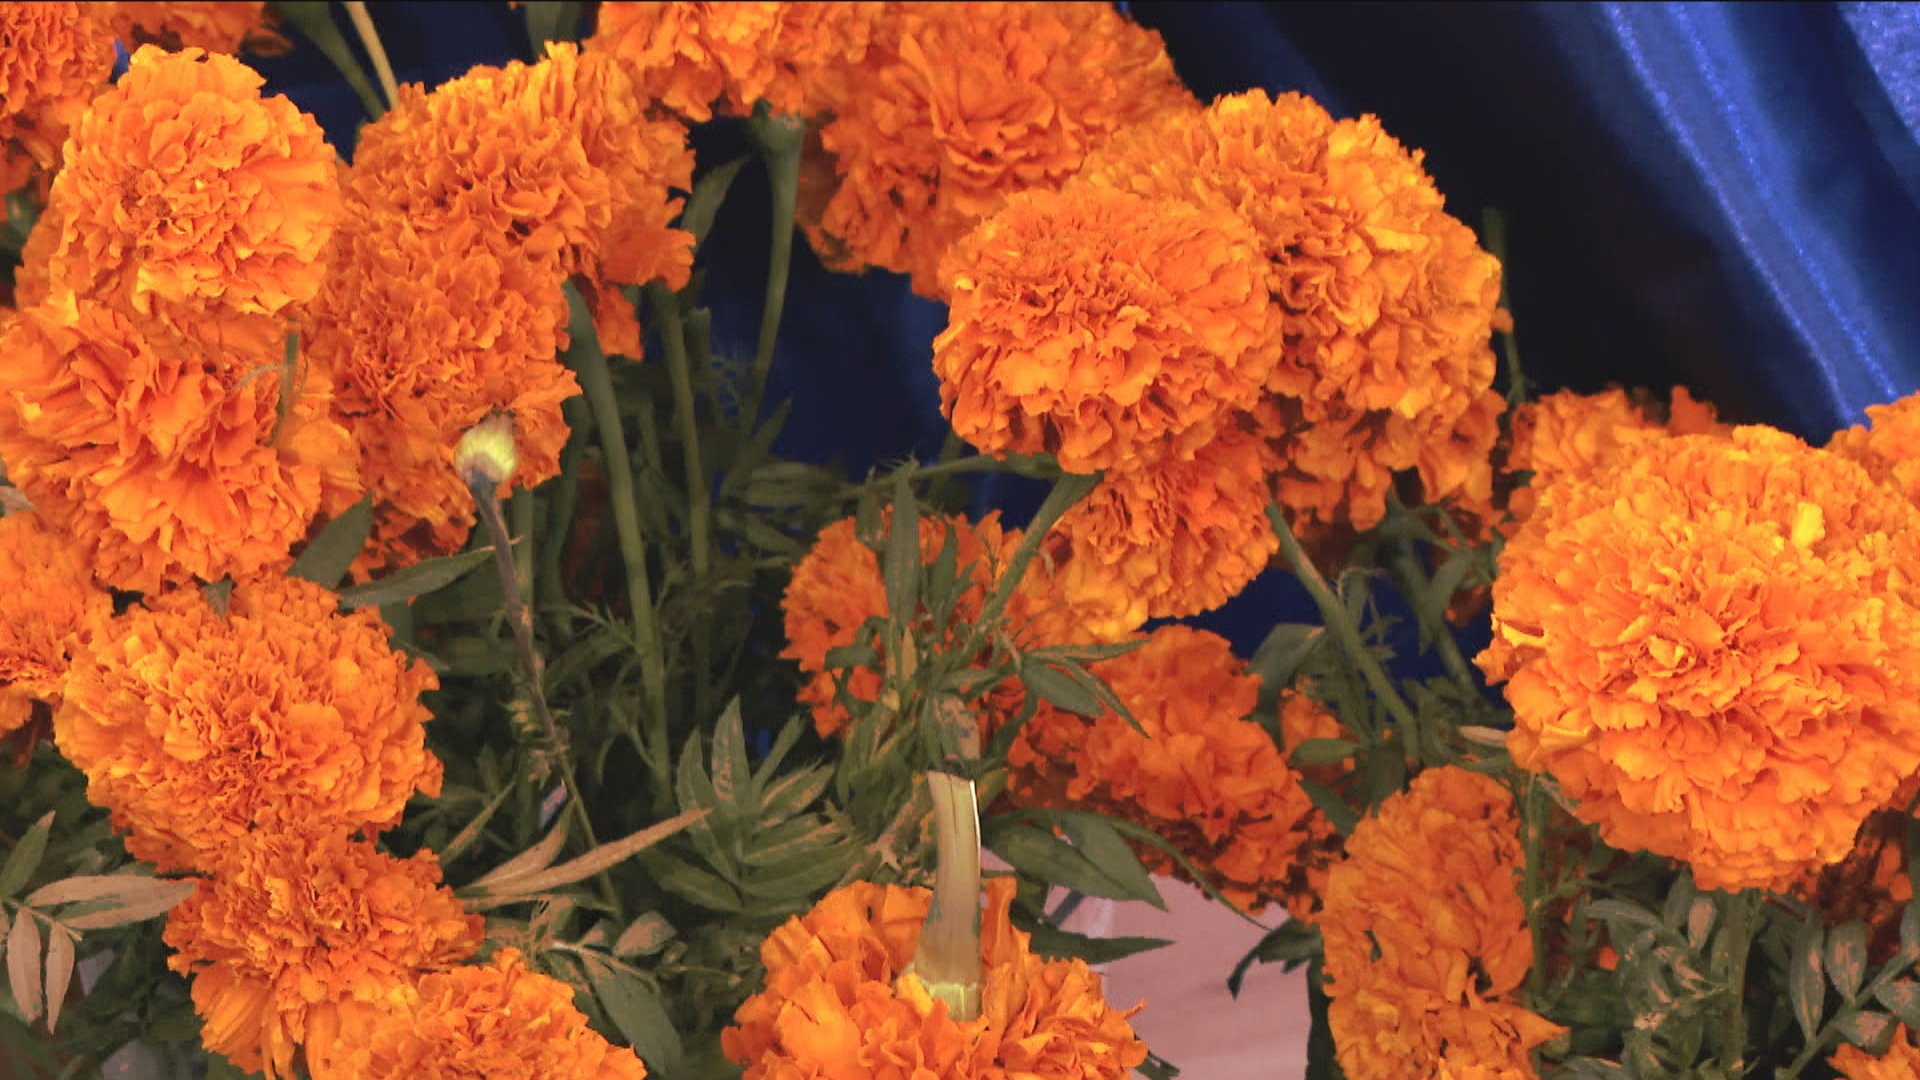 Flor de Muerto' Cempasúchiles Make Día de los Muertos Ofrendas Bright |  Latino Voices | Chicago News | WTTW